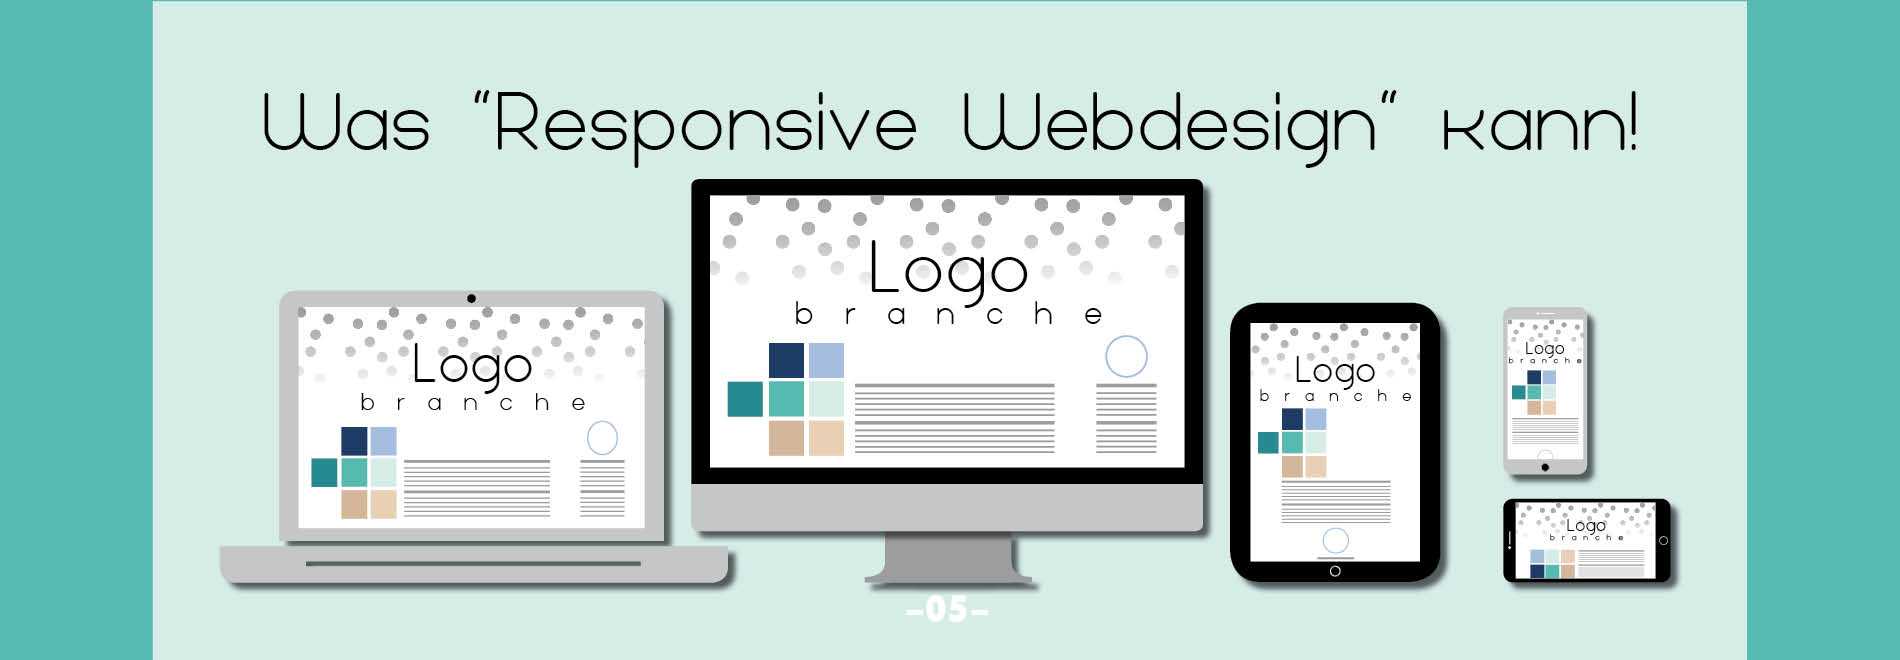 015_Responsive_Webdesign.jpg